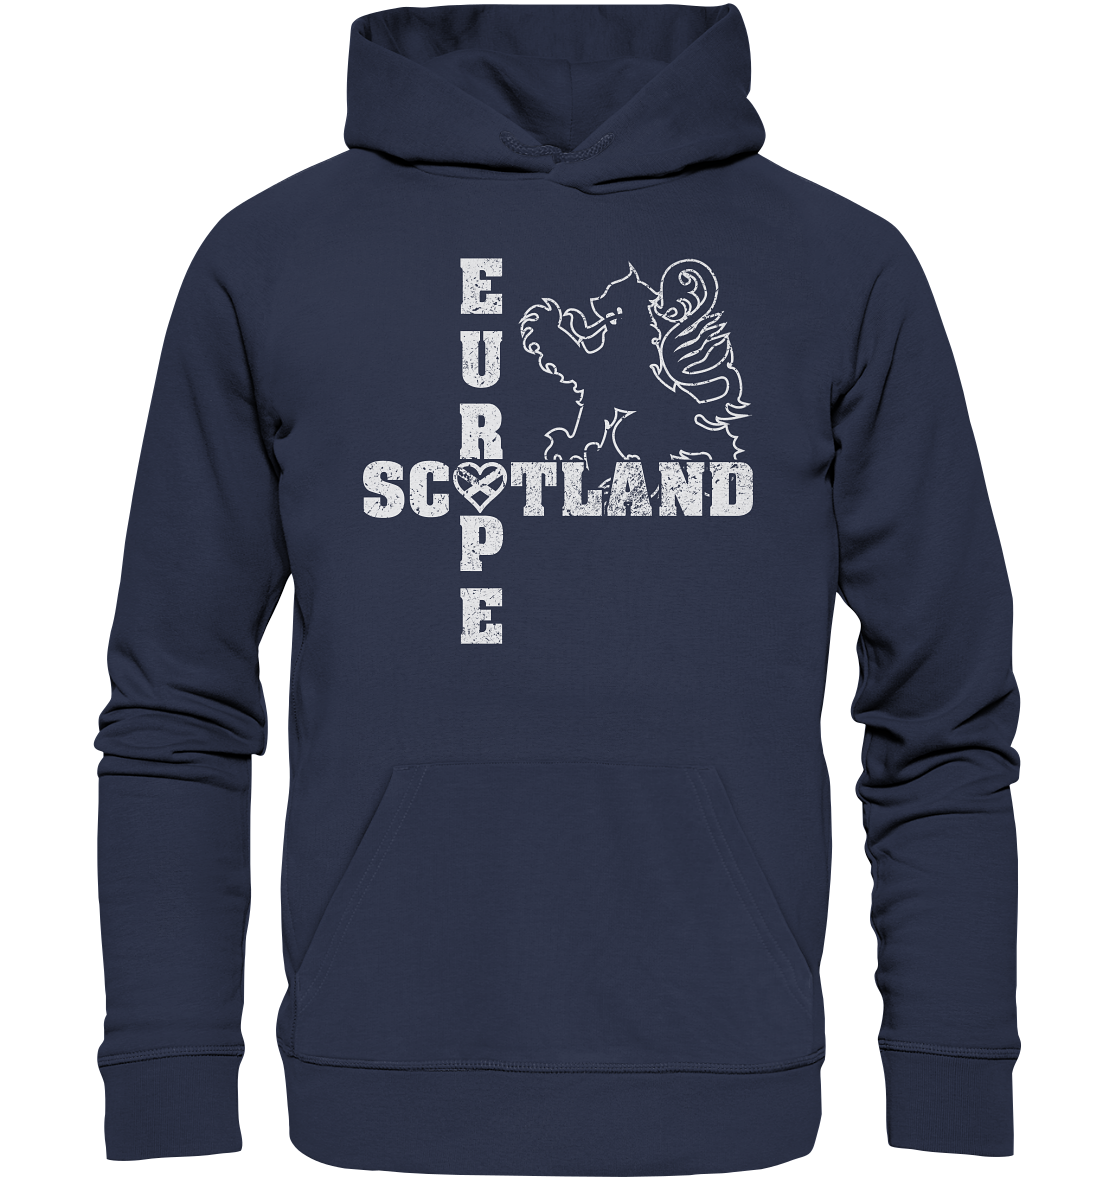 Scotland "Europe" - Premium Unisex Hoodie